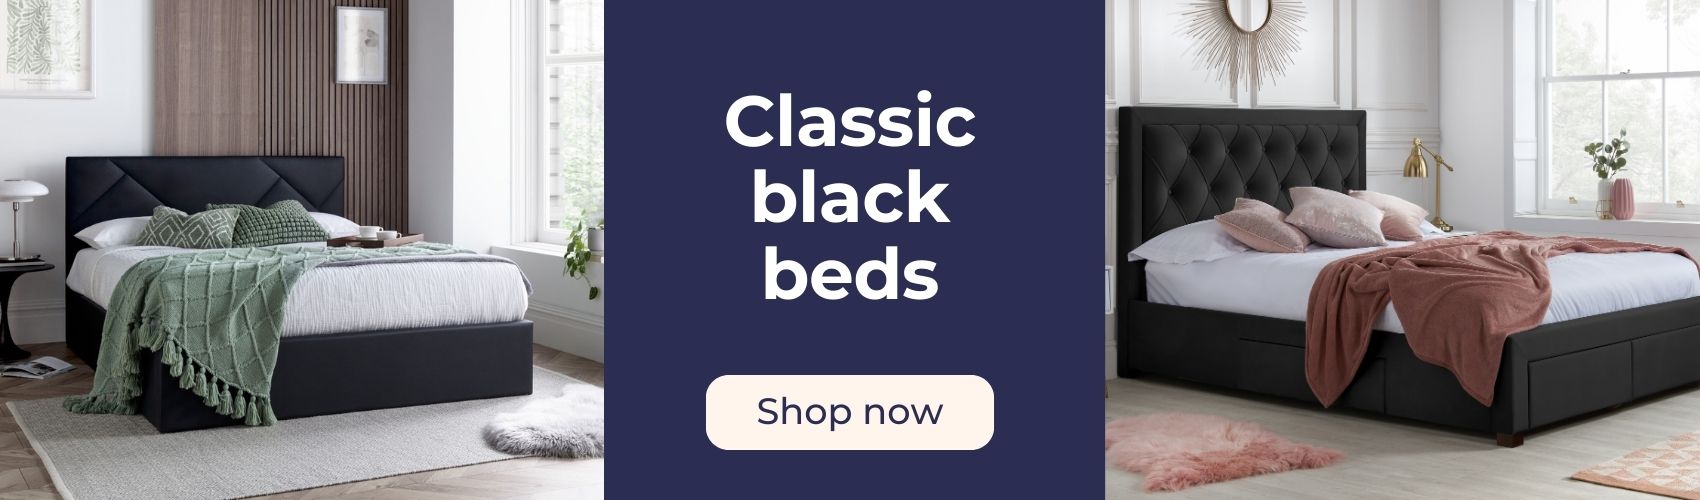 Shop black beds